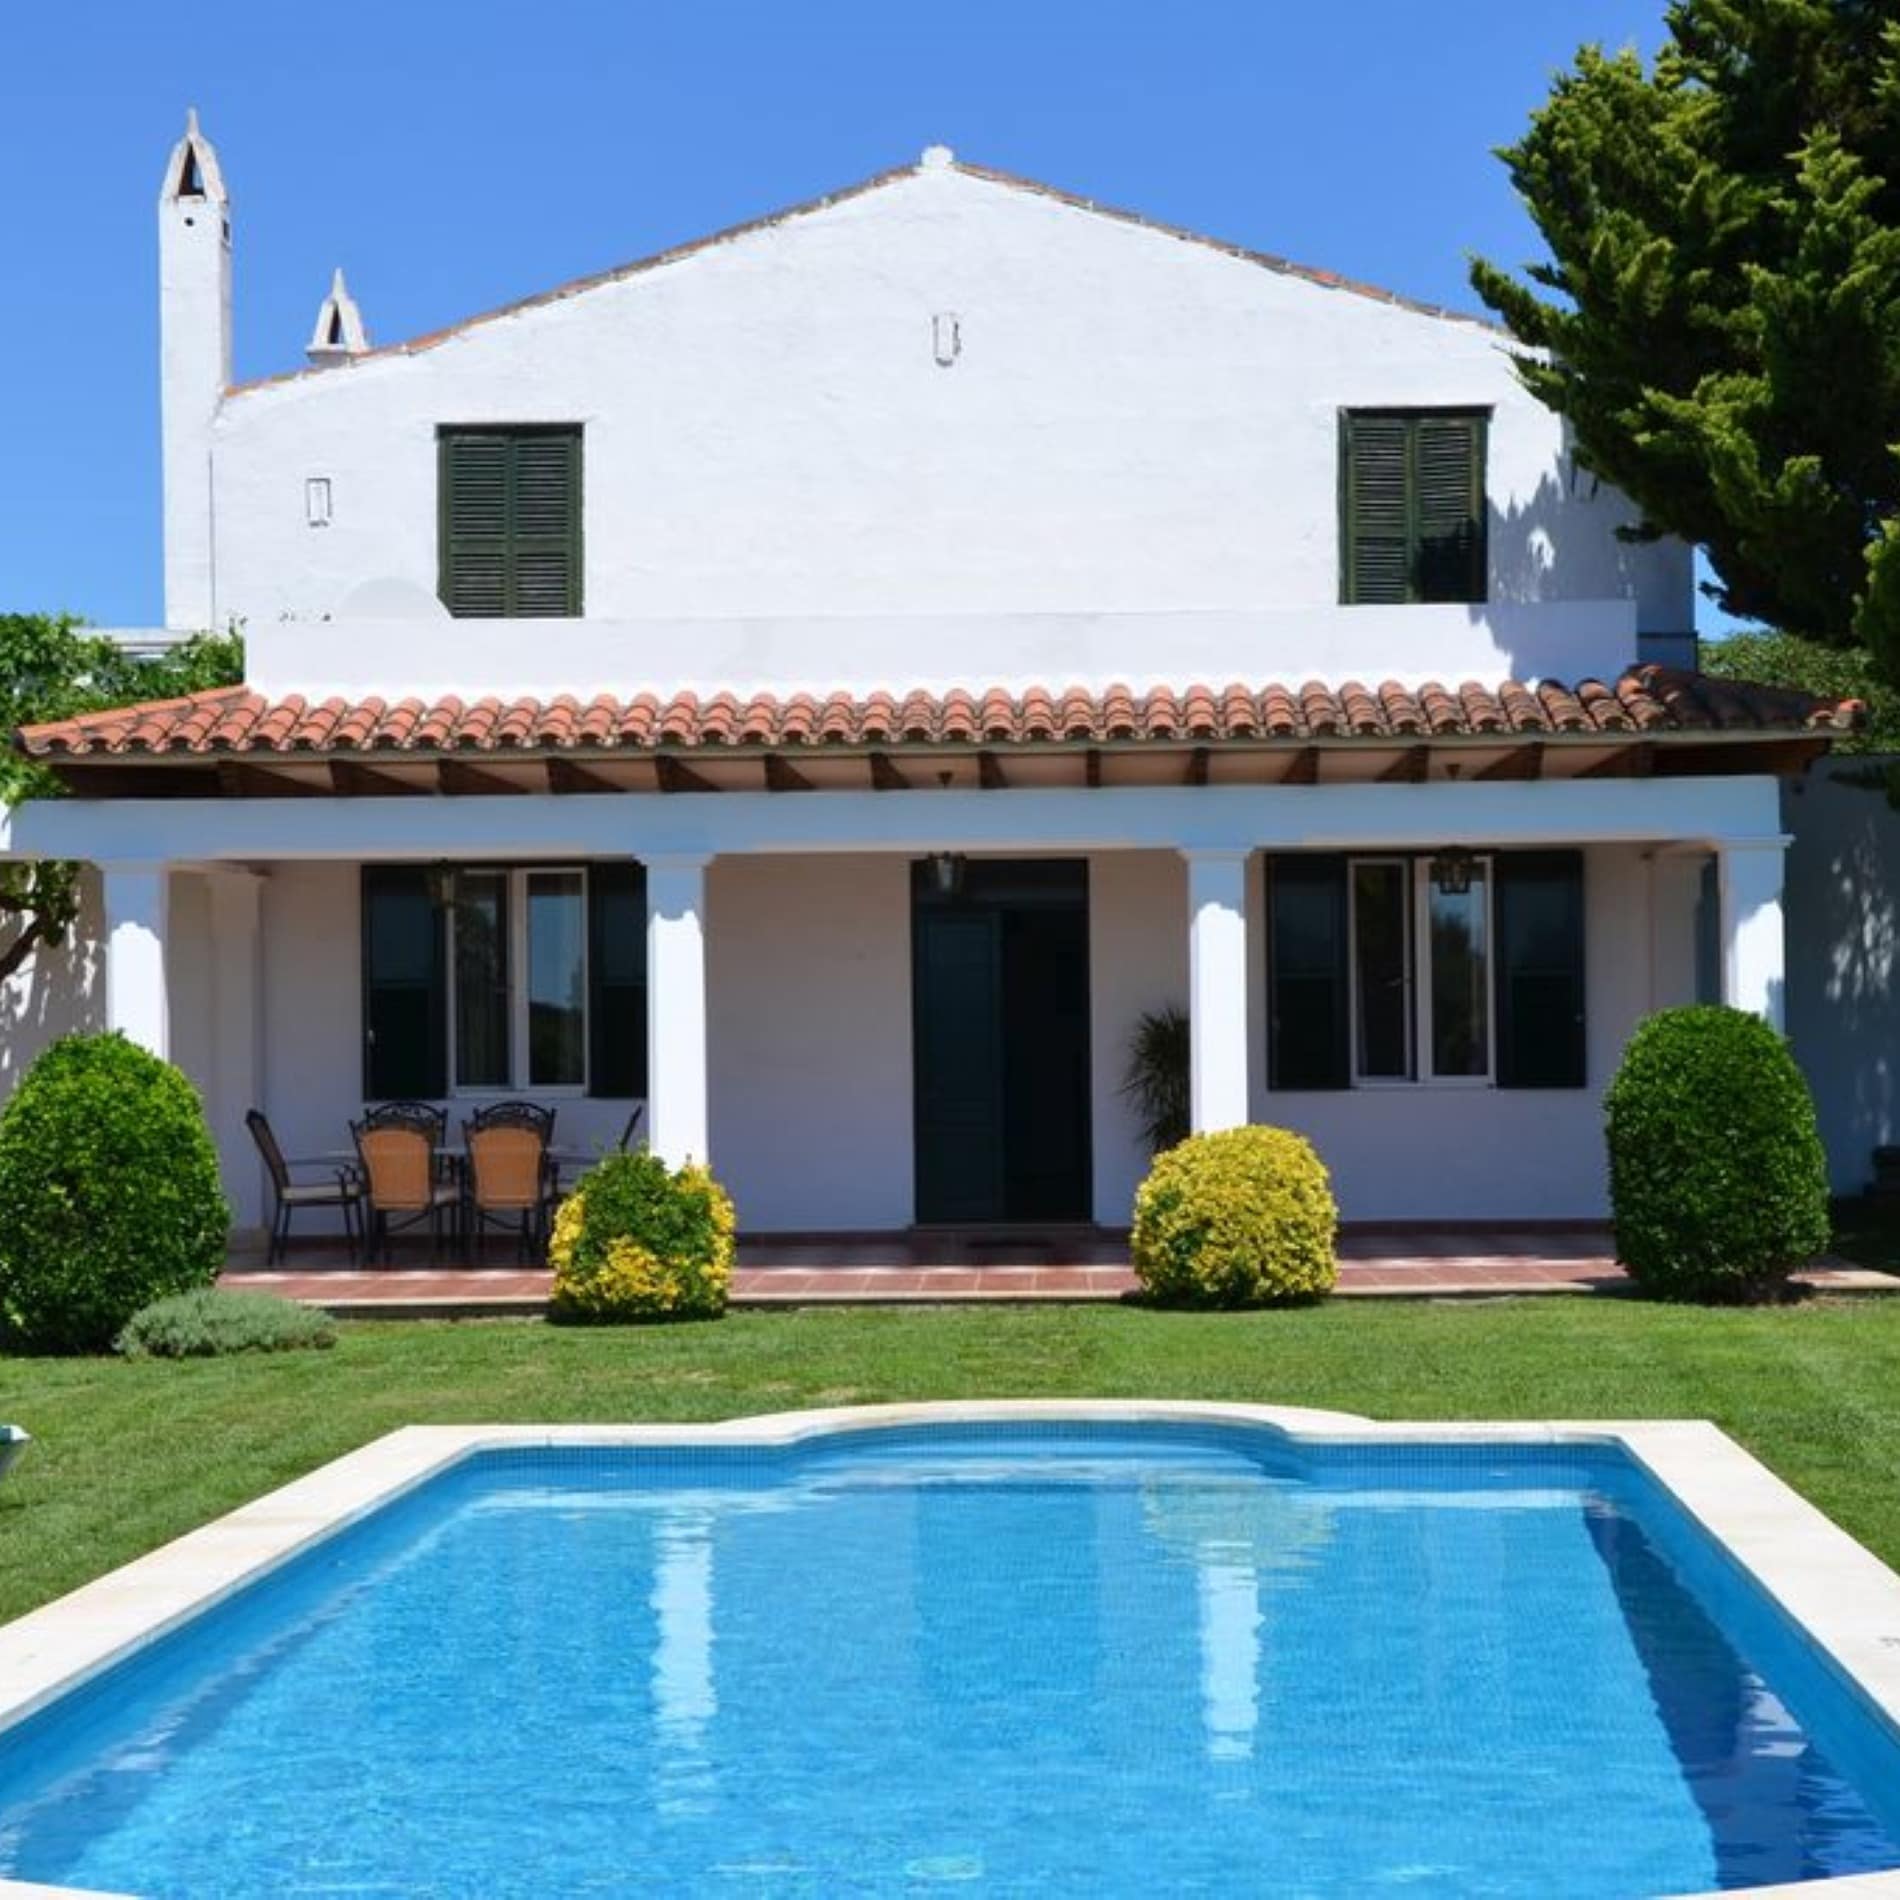 Gran casa de campo con piscina en alquiler en Menorca